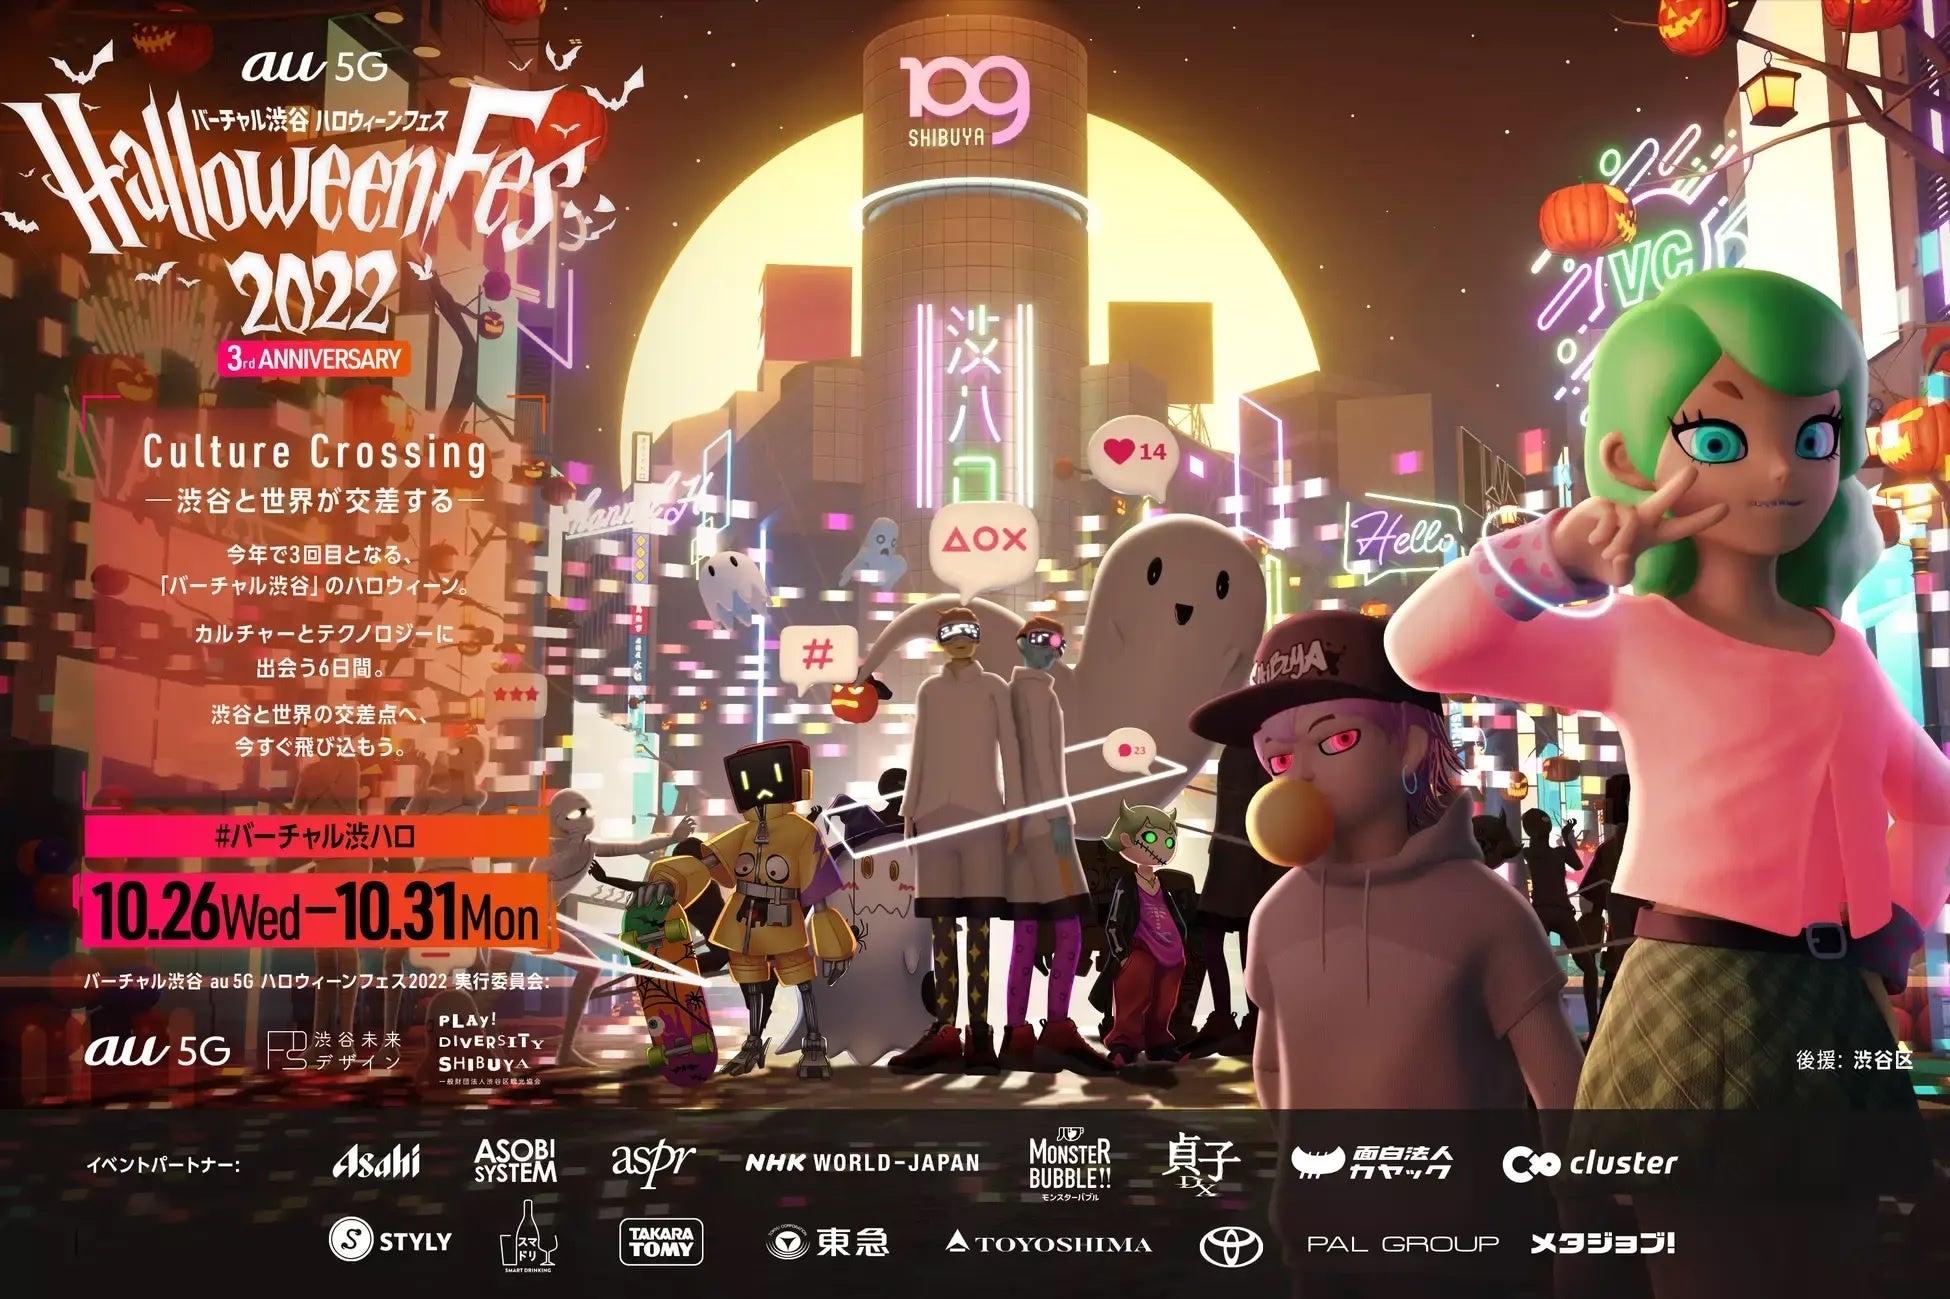 「バーチャル渋谷 au 5G ハロウィーンフェス 2022」10月31日はTVアニメ『東京リベンジャーズ』ハロウィン特番の中継決定！人気VTuber・にじさんじメンバーによるプレゼント企画も！